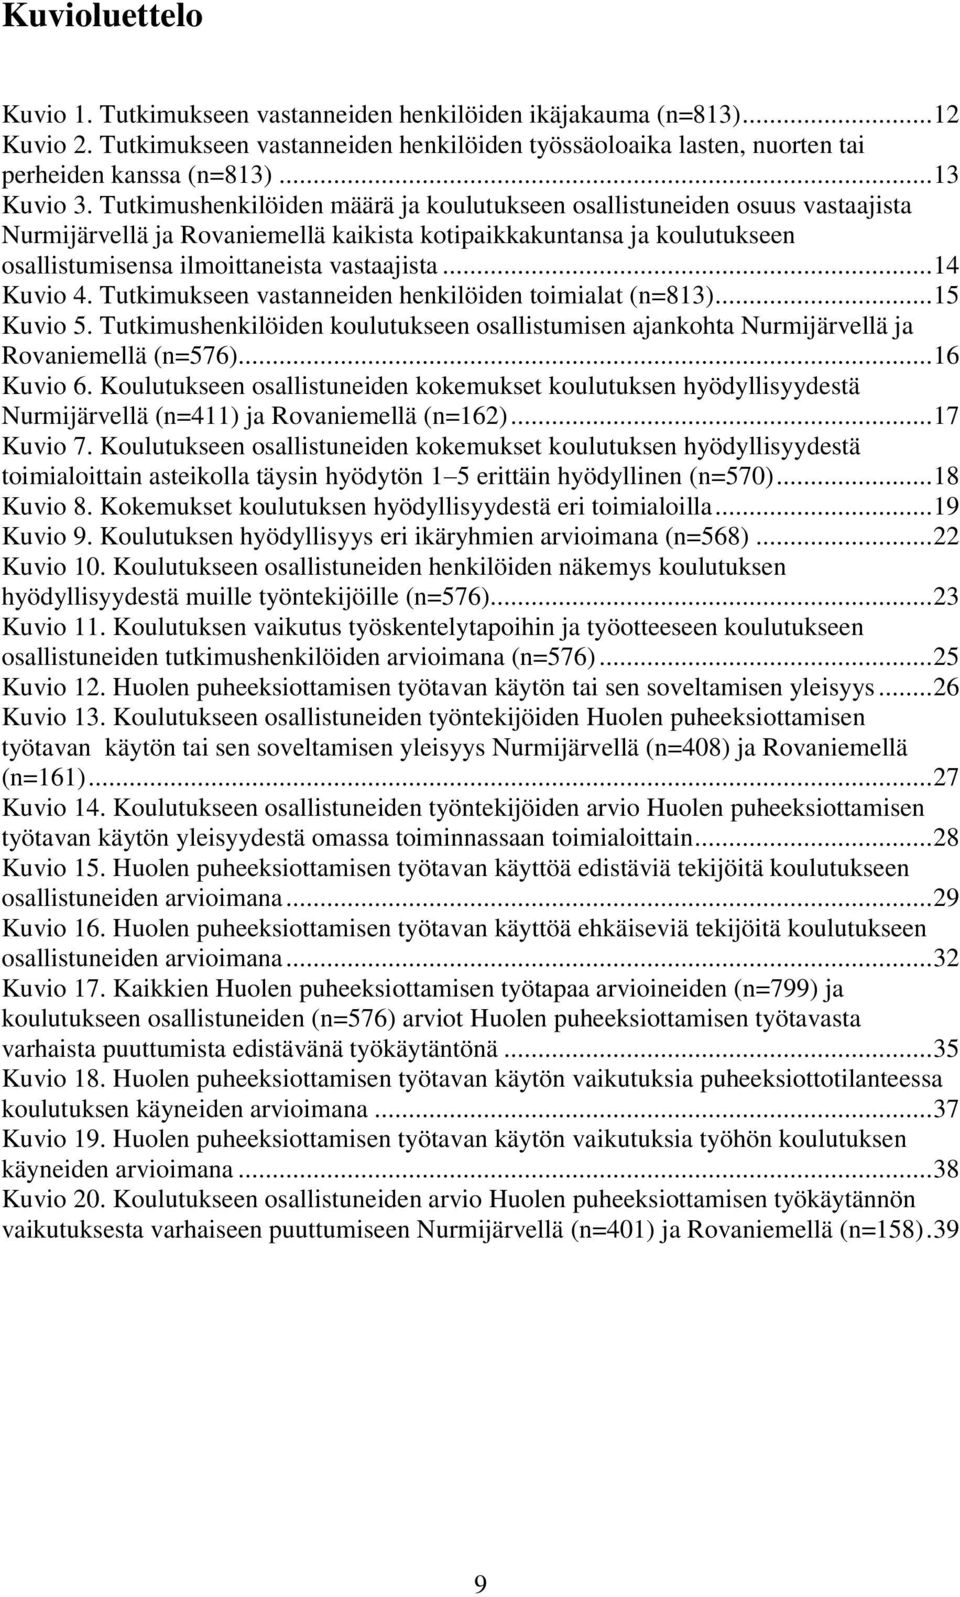 Tutkimushenkilöiden määrä ja koulutukseen osallistuneiden osuus vastaajista Nurmijärvellä ja Rovaniemellä kaikista kotipaikkakuntansa ja koulutukseen osallistumisensa ilmoittaneista vastaajista.